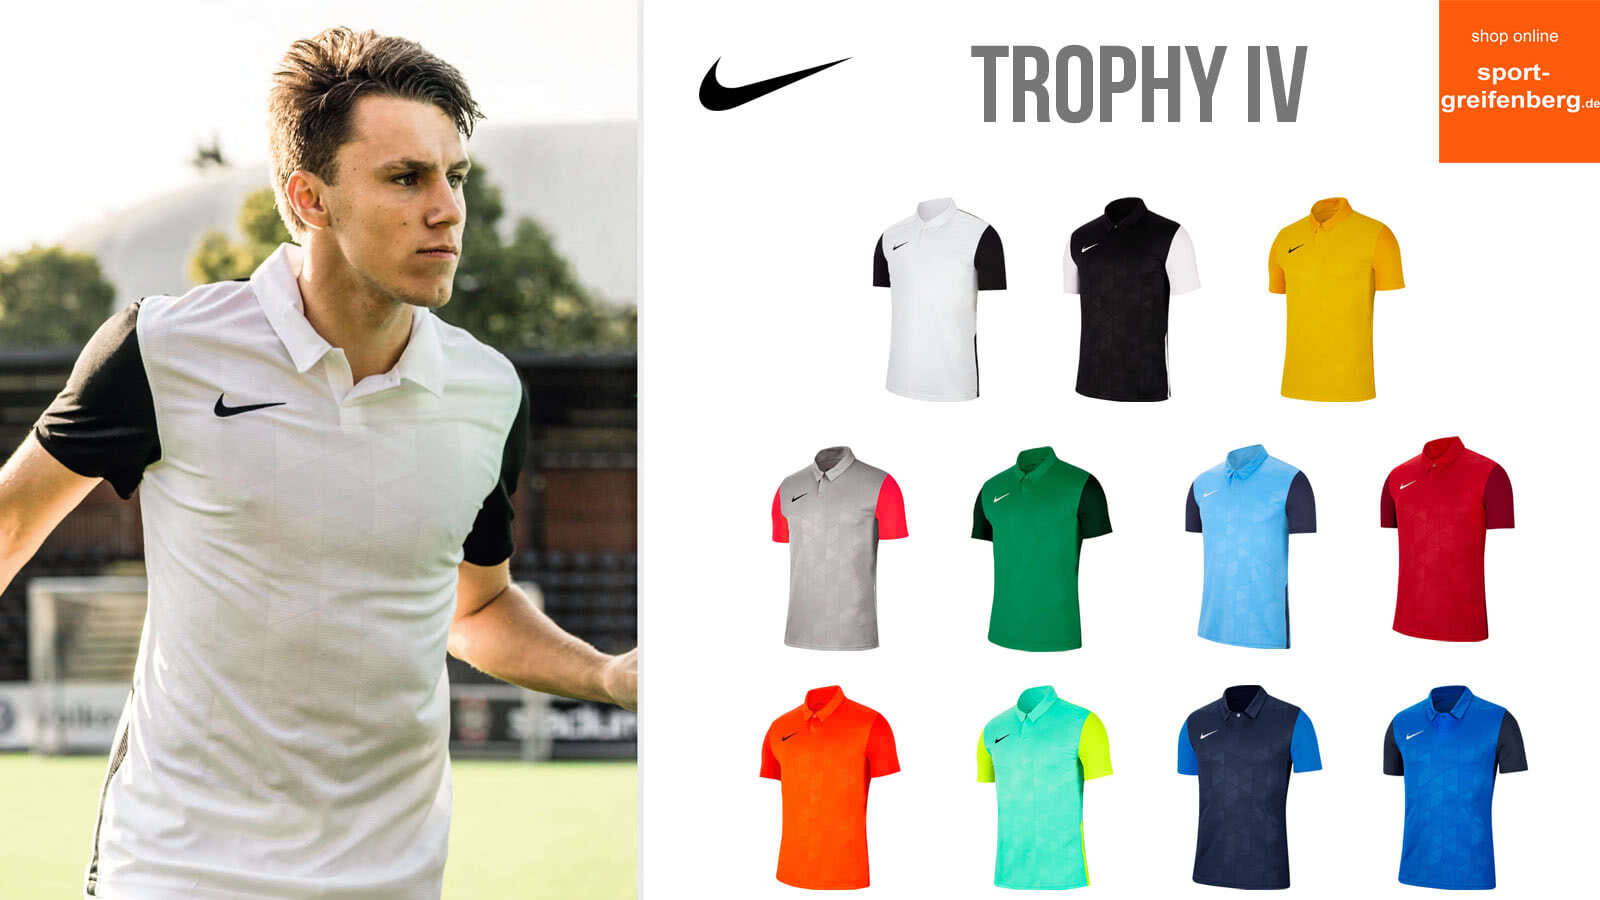 Das Nike Trophy IV Trikot aus dem Katalog 2020/2021